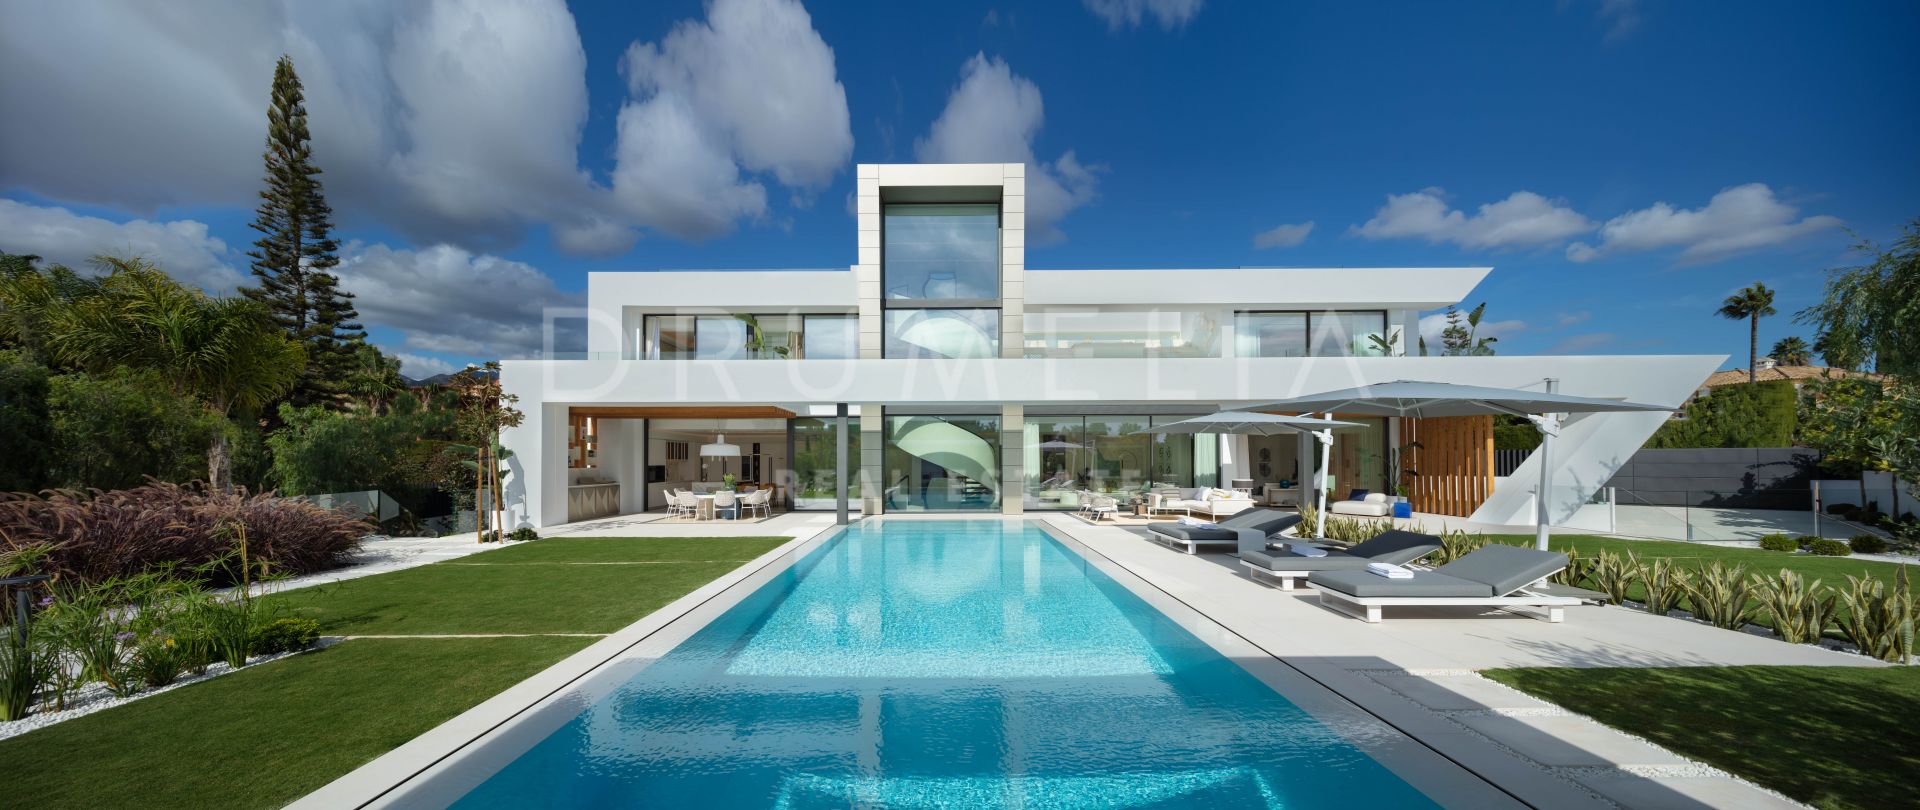 Villa Shiro - Hervorragende neue moderne Villa am Strand in Bahía de Marbella, Marbella Ost